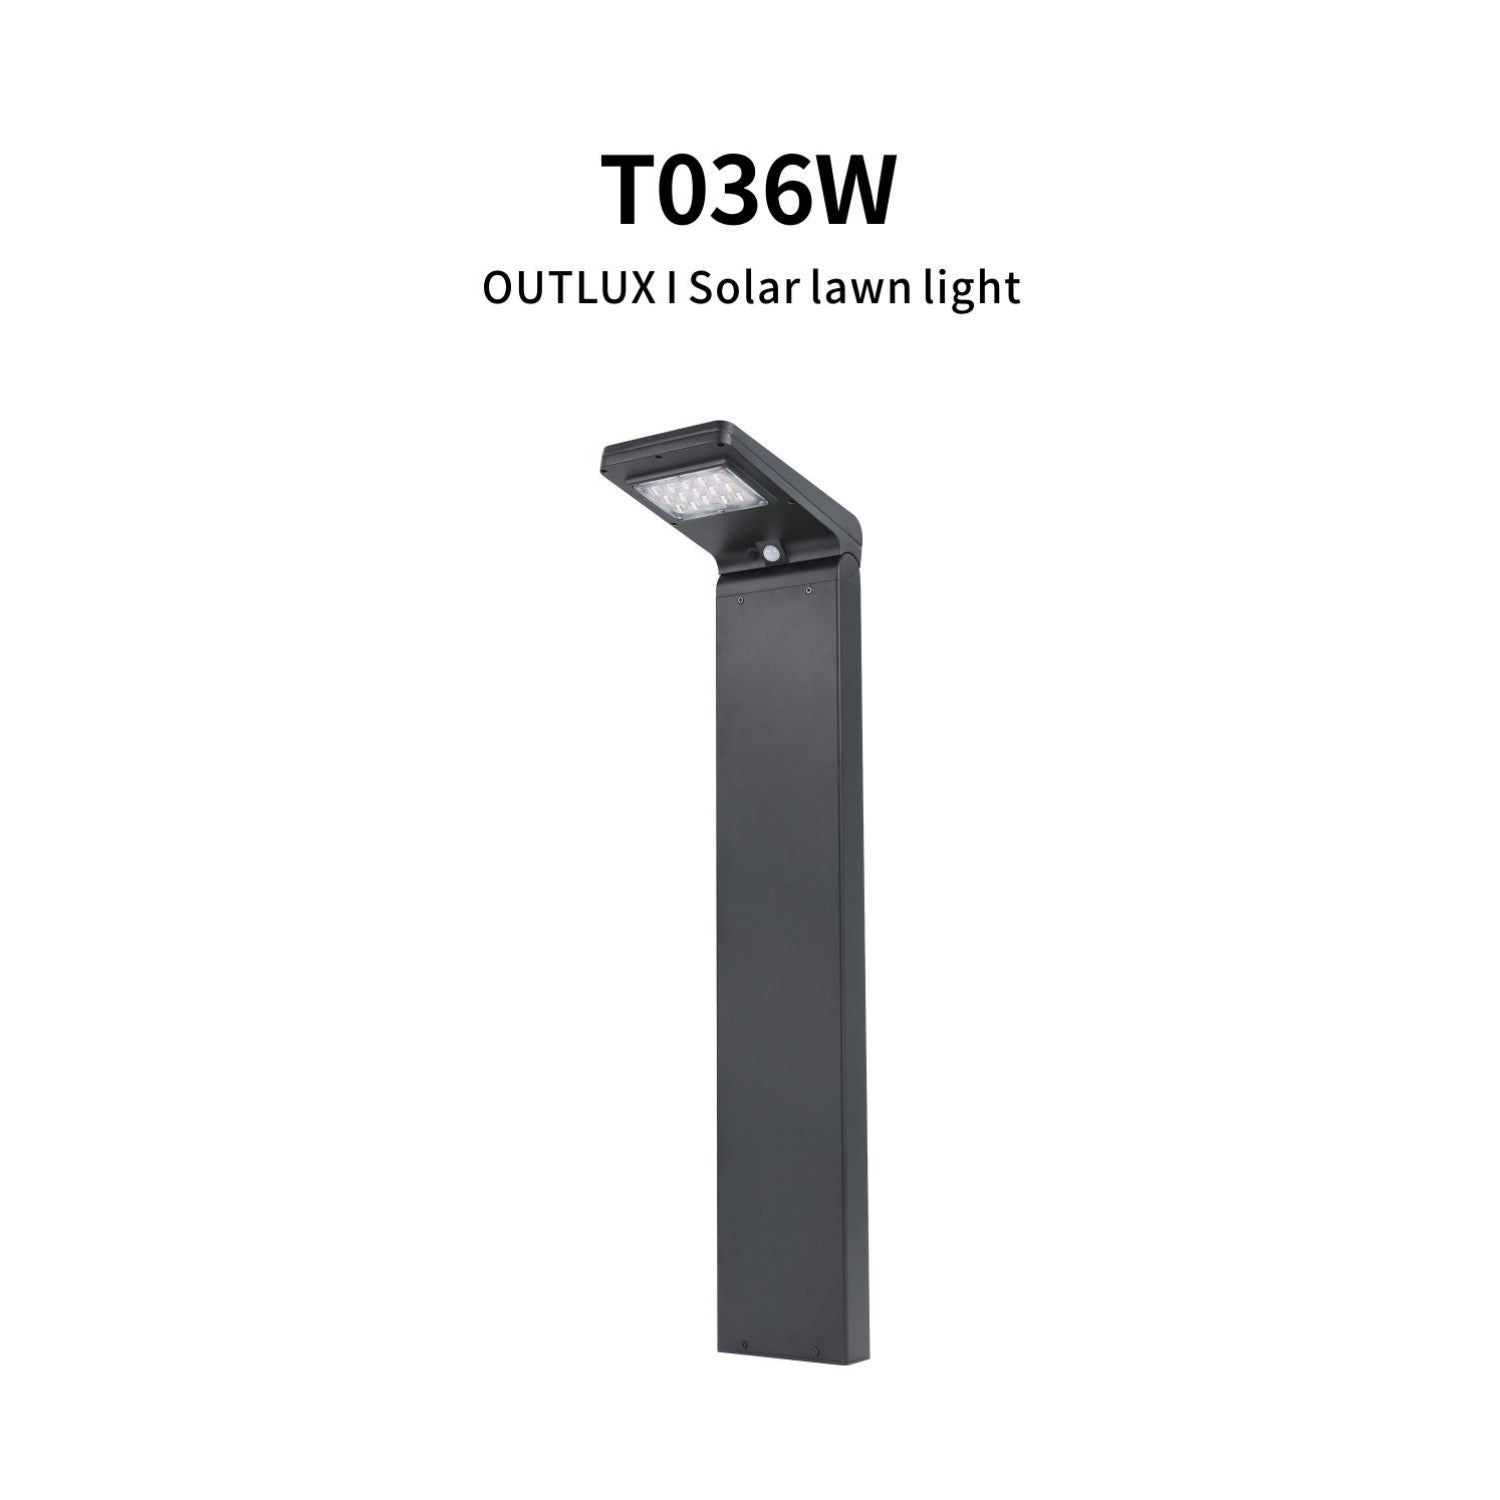 Outlux Solar Garden Lights -T036W